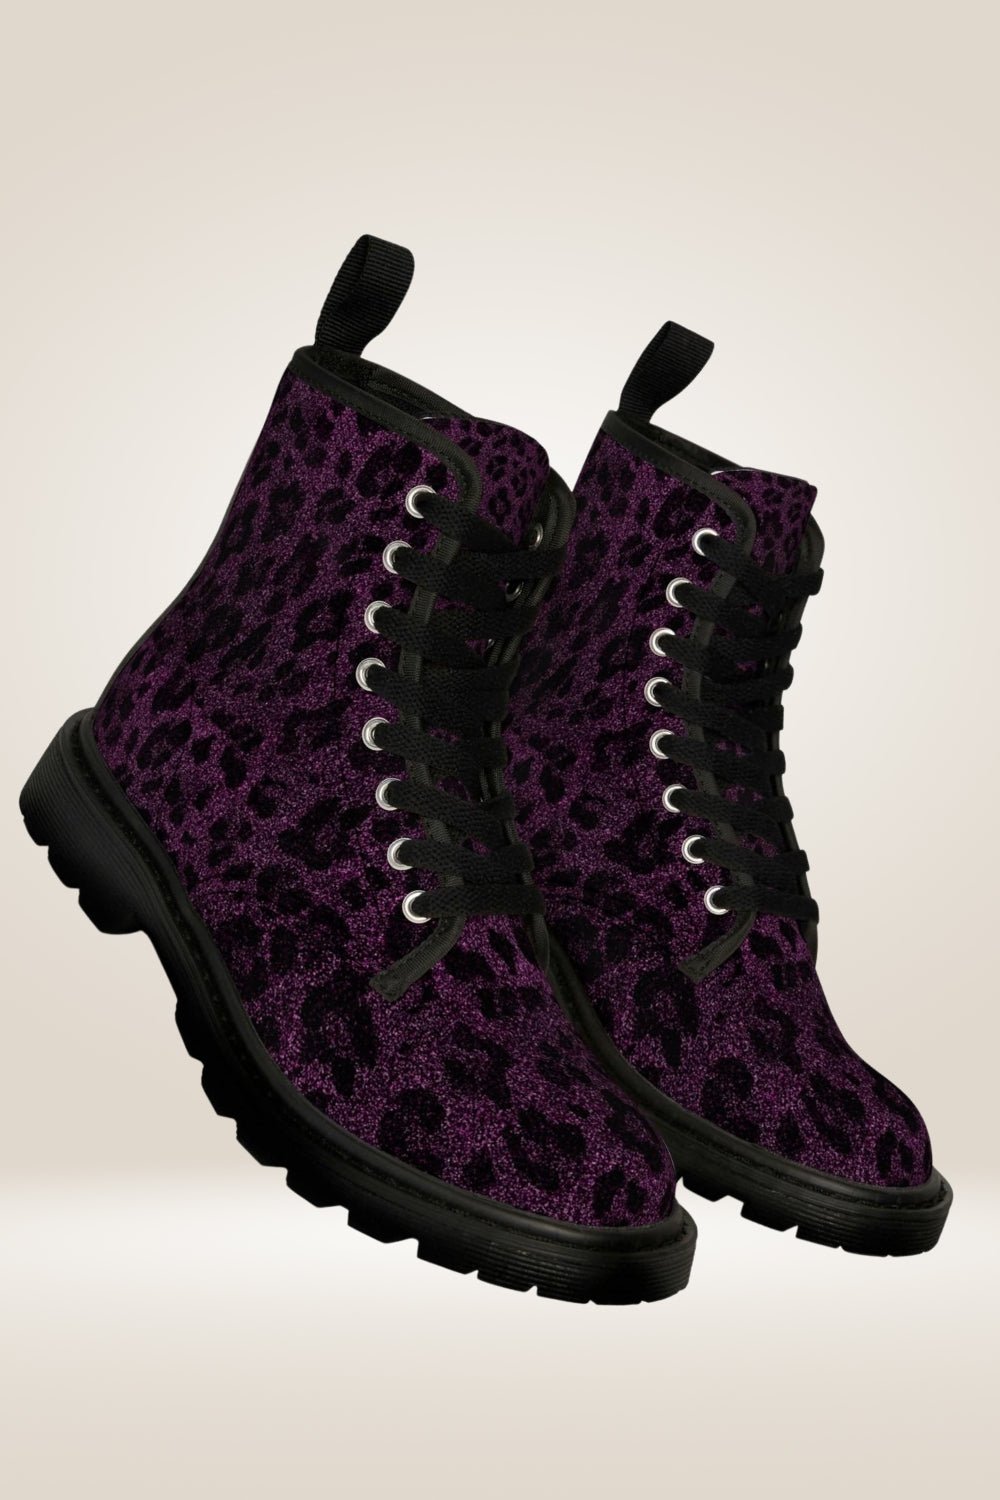 Glitter Print Purple Combat Boots - Black Sole - TGC Boutique - Combat Boots